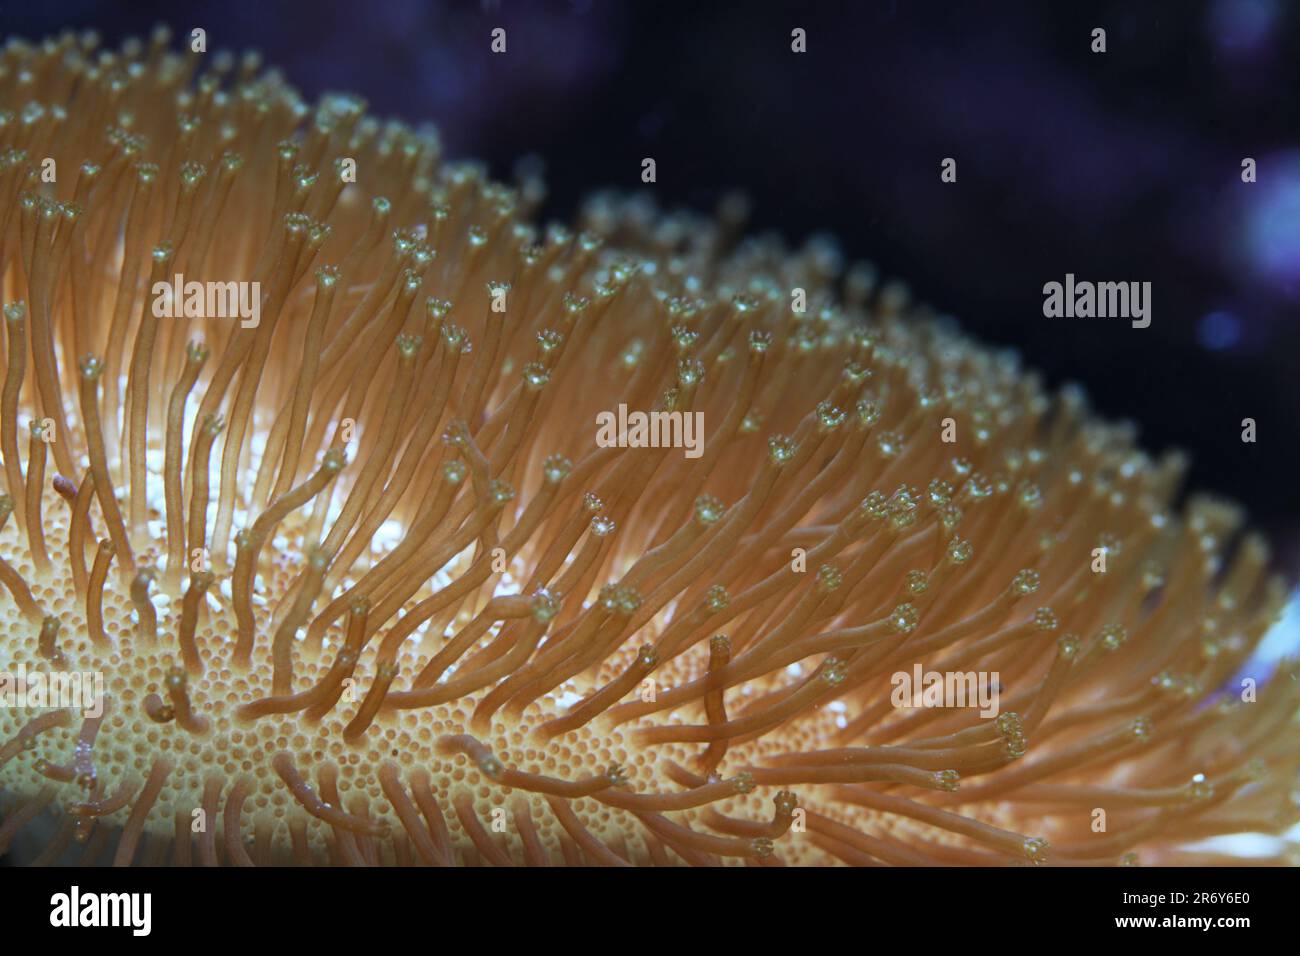 Leather coral in marine reef aquarium Stock Photo